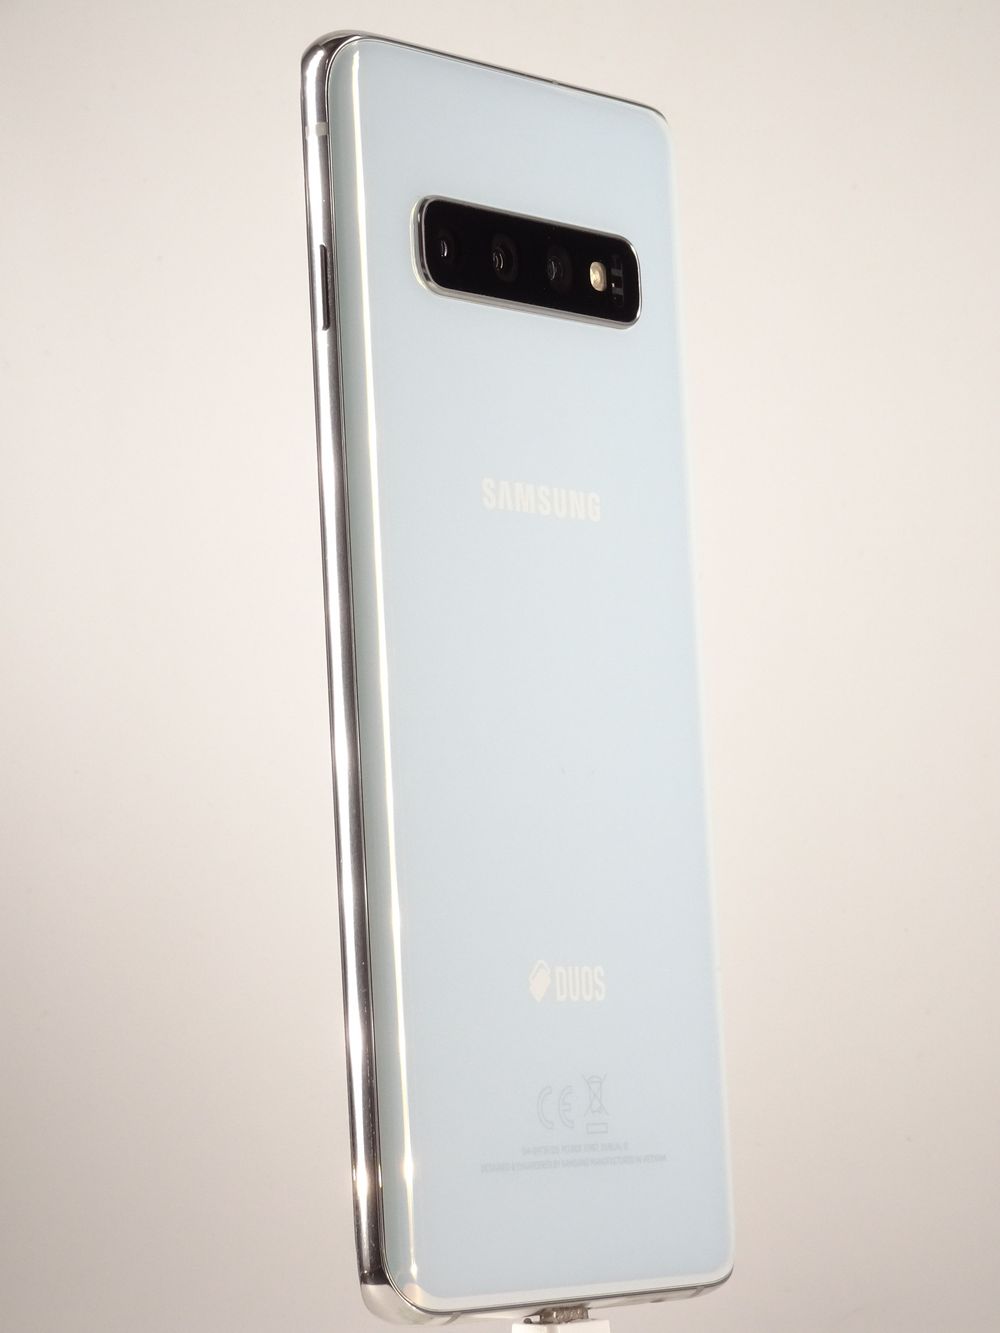 Telefon mobil Samsung Galaxy S10 Dual Sim, Prism White, 512 GB,  Ca Nou